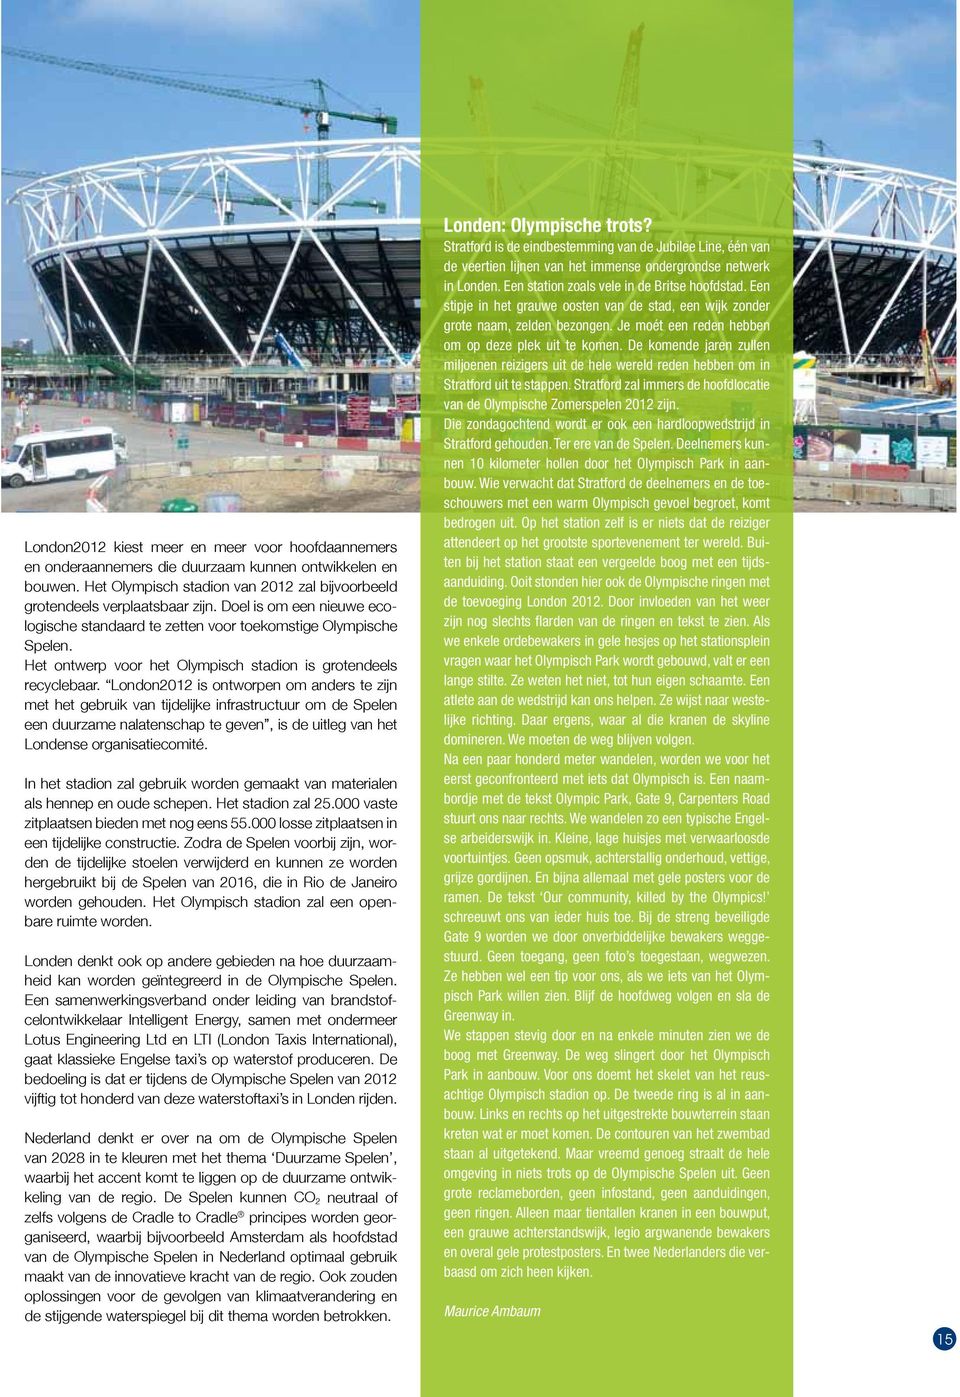 London2012 is ontworpen om anders te zijn met het gebruik van tijdelijke infrastructuur om de Spelen een duurzame nalatenschap te geven, is de uitleg van het Londense organisatiecomité.